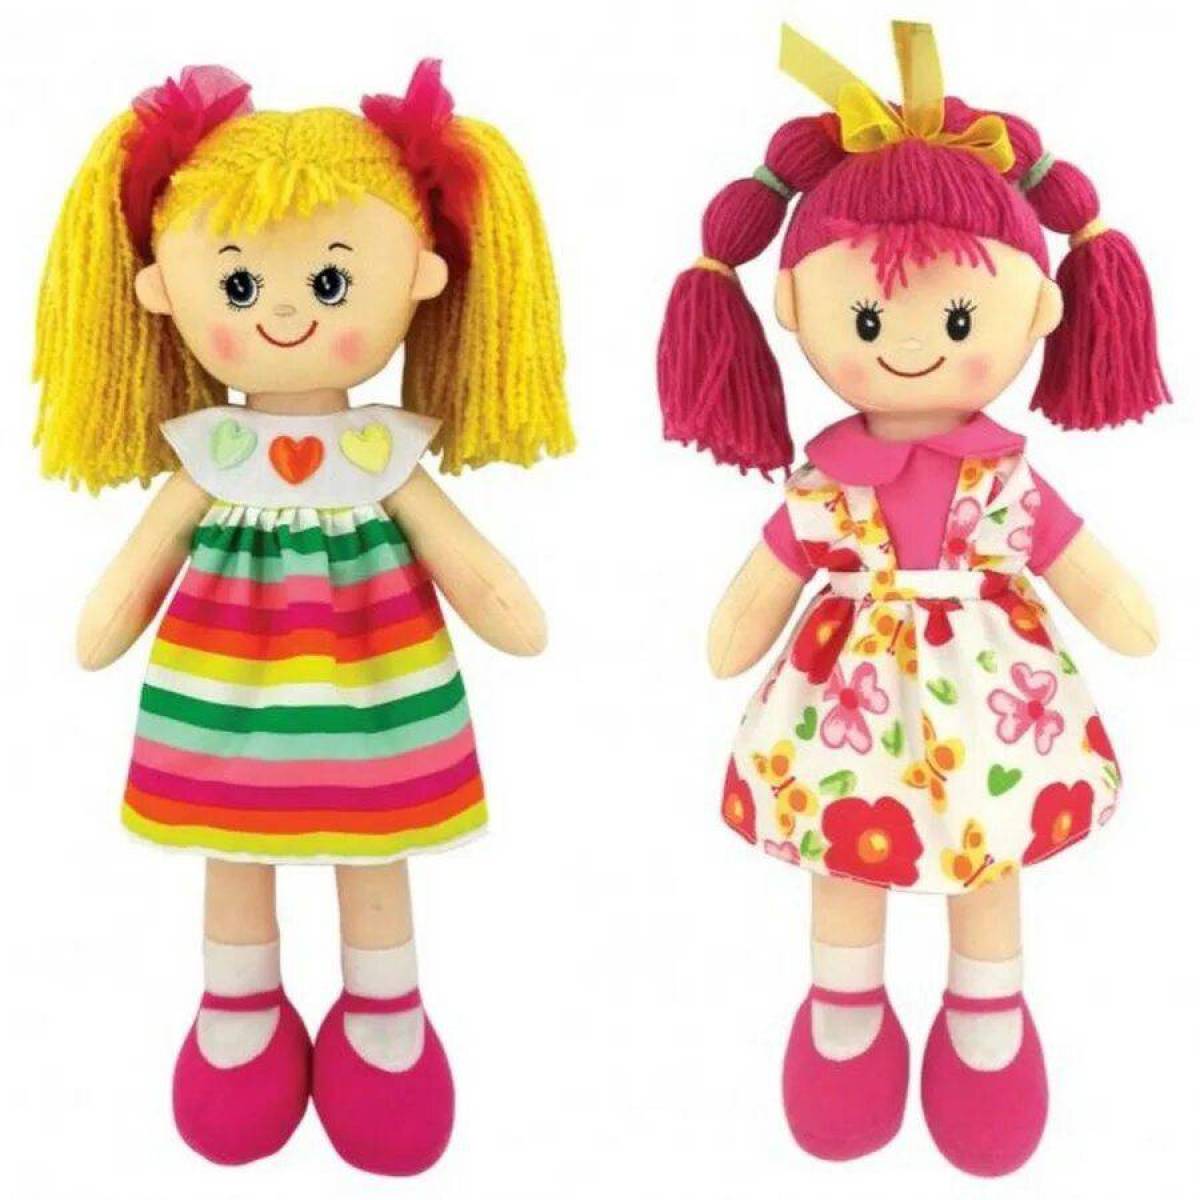 Куклы и другие игрушки. Игрушки и куклы. Куклы для детей. Куклы для девочек. Игрушки для девочек куклы.